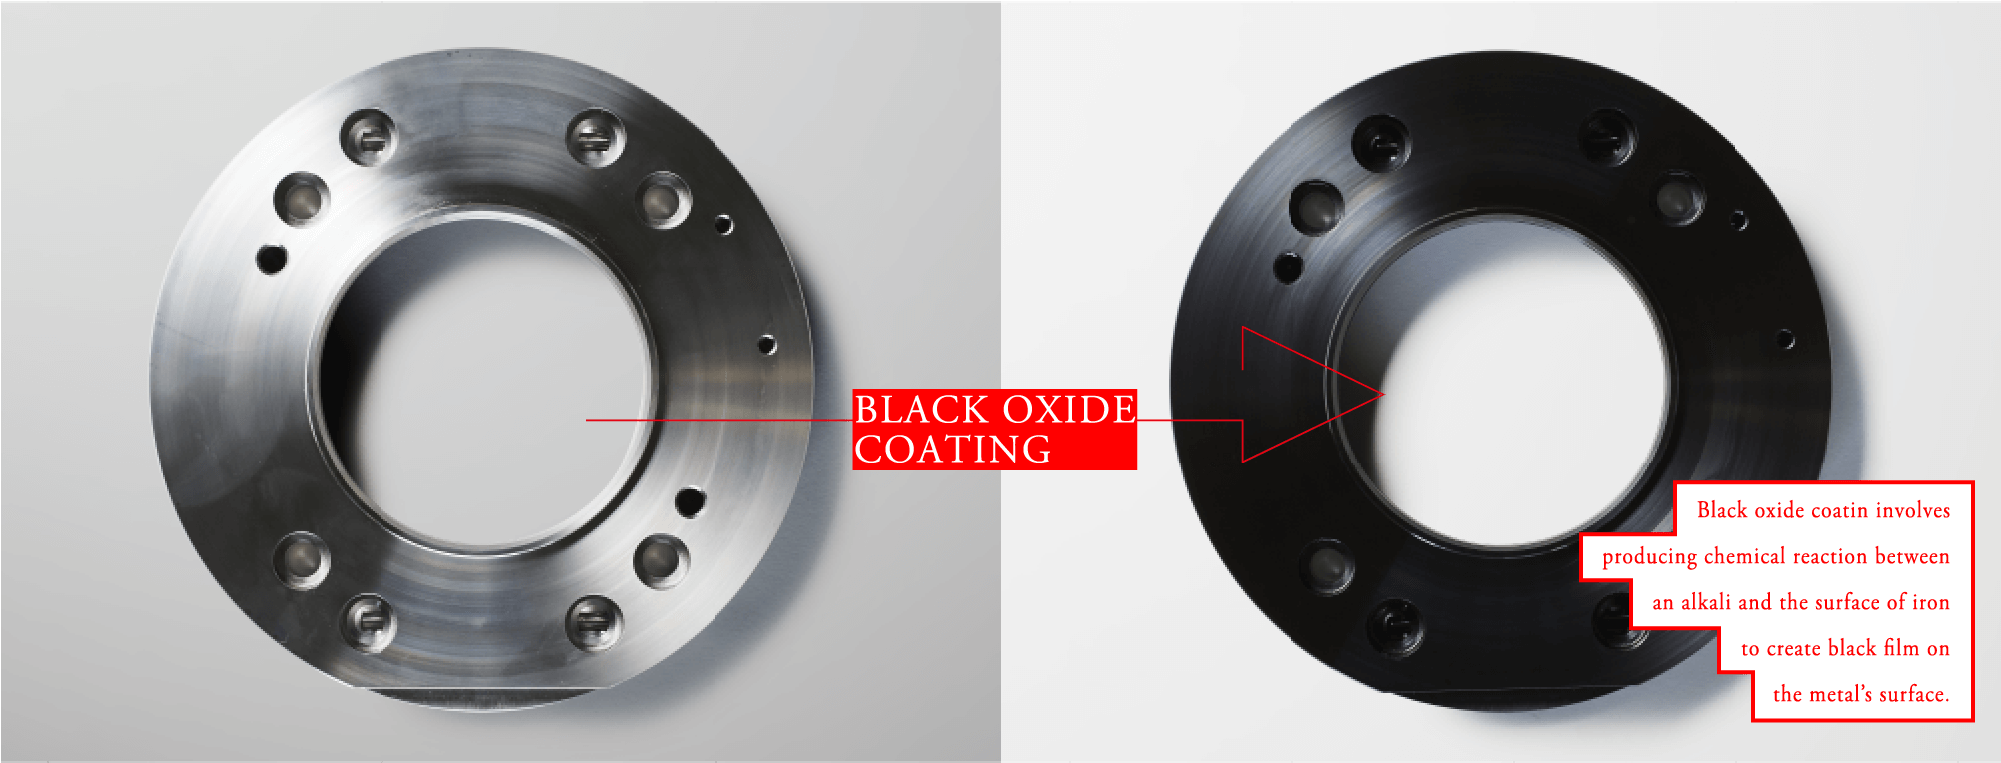 Black Oxide Coating